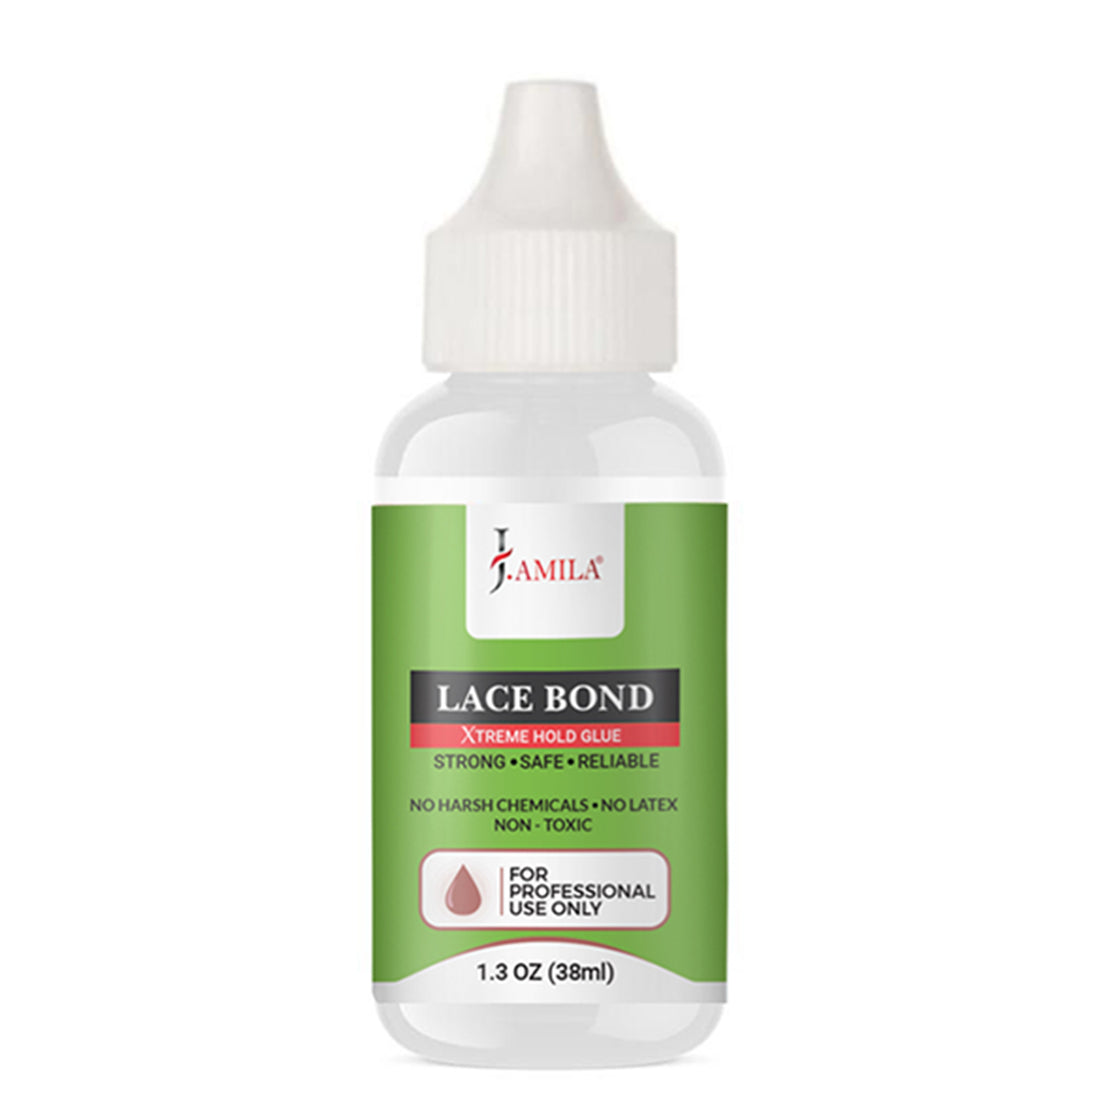 J. AMILA Lace Bond Xtreme Hold Glue (1.3oz)